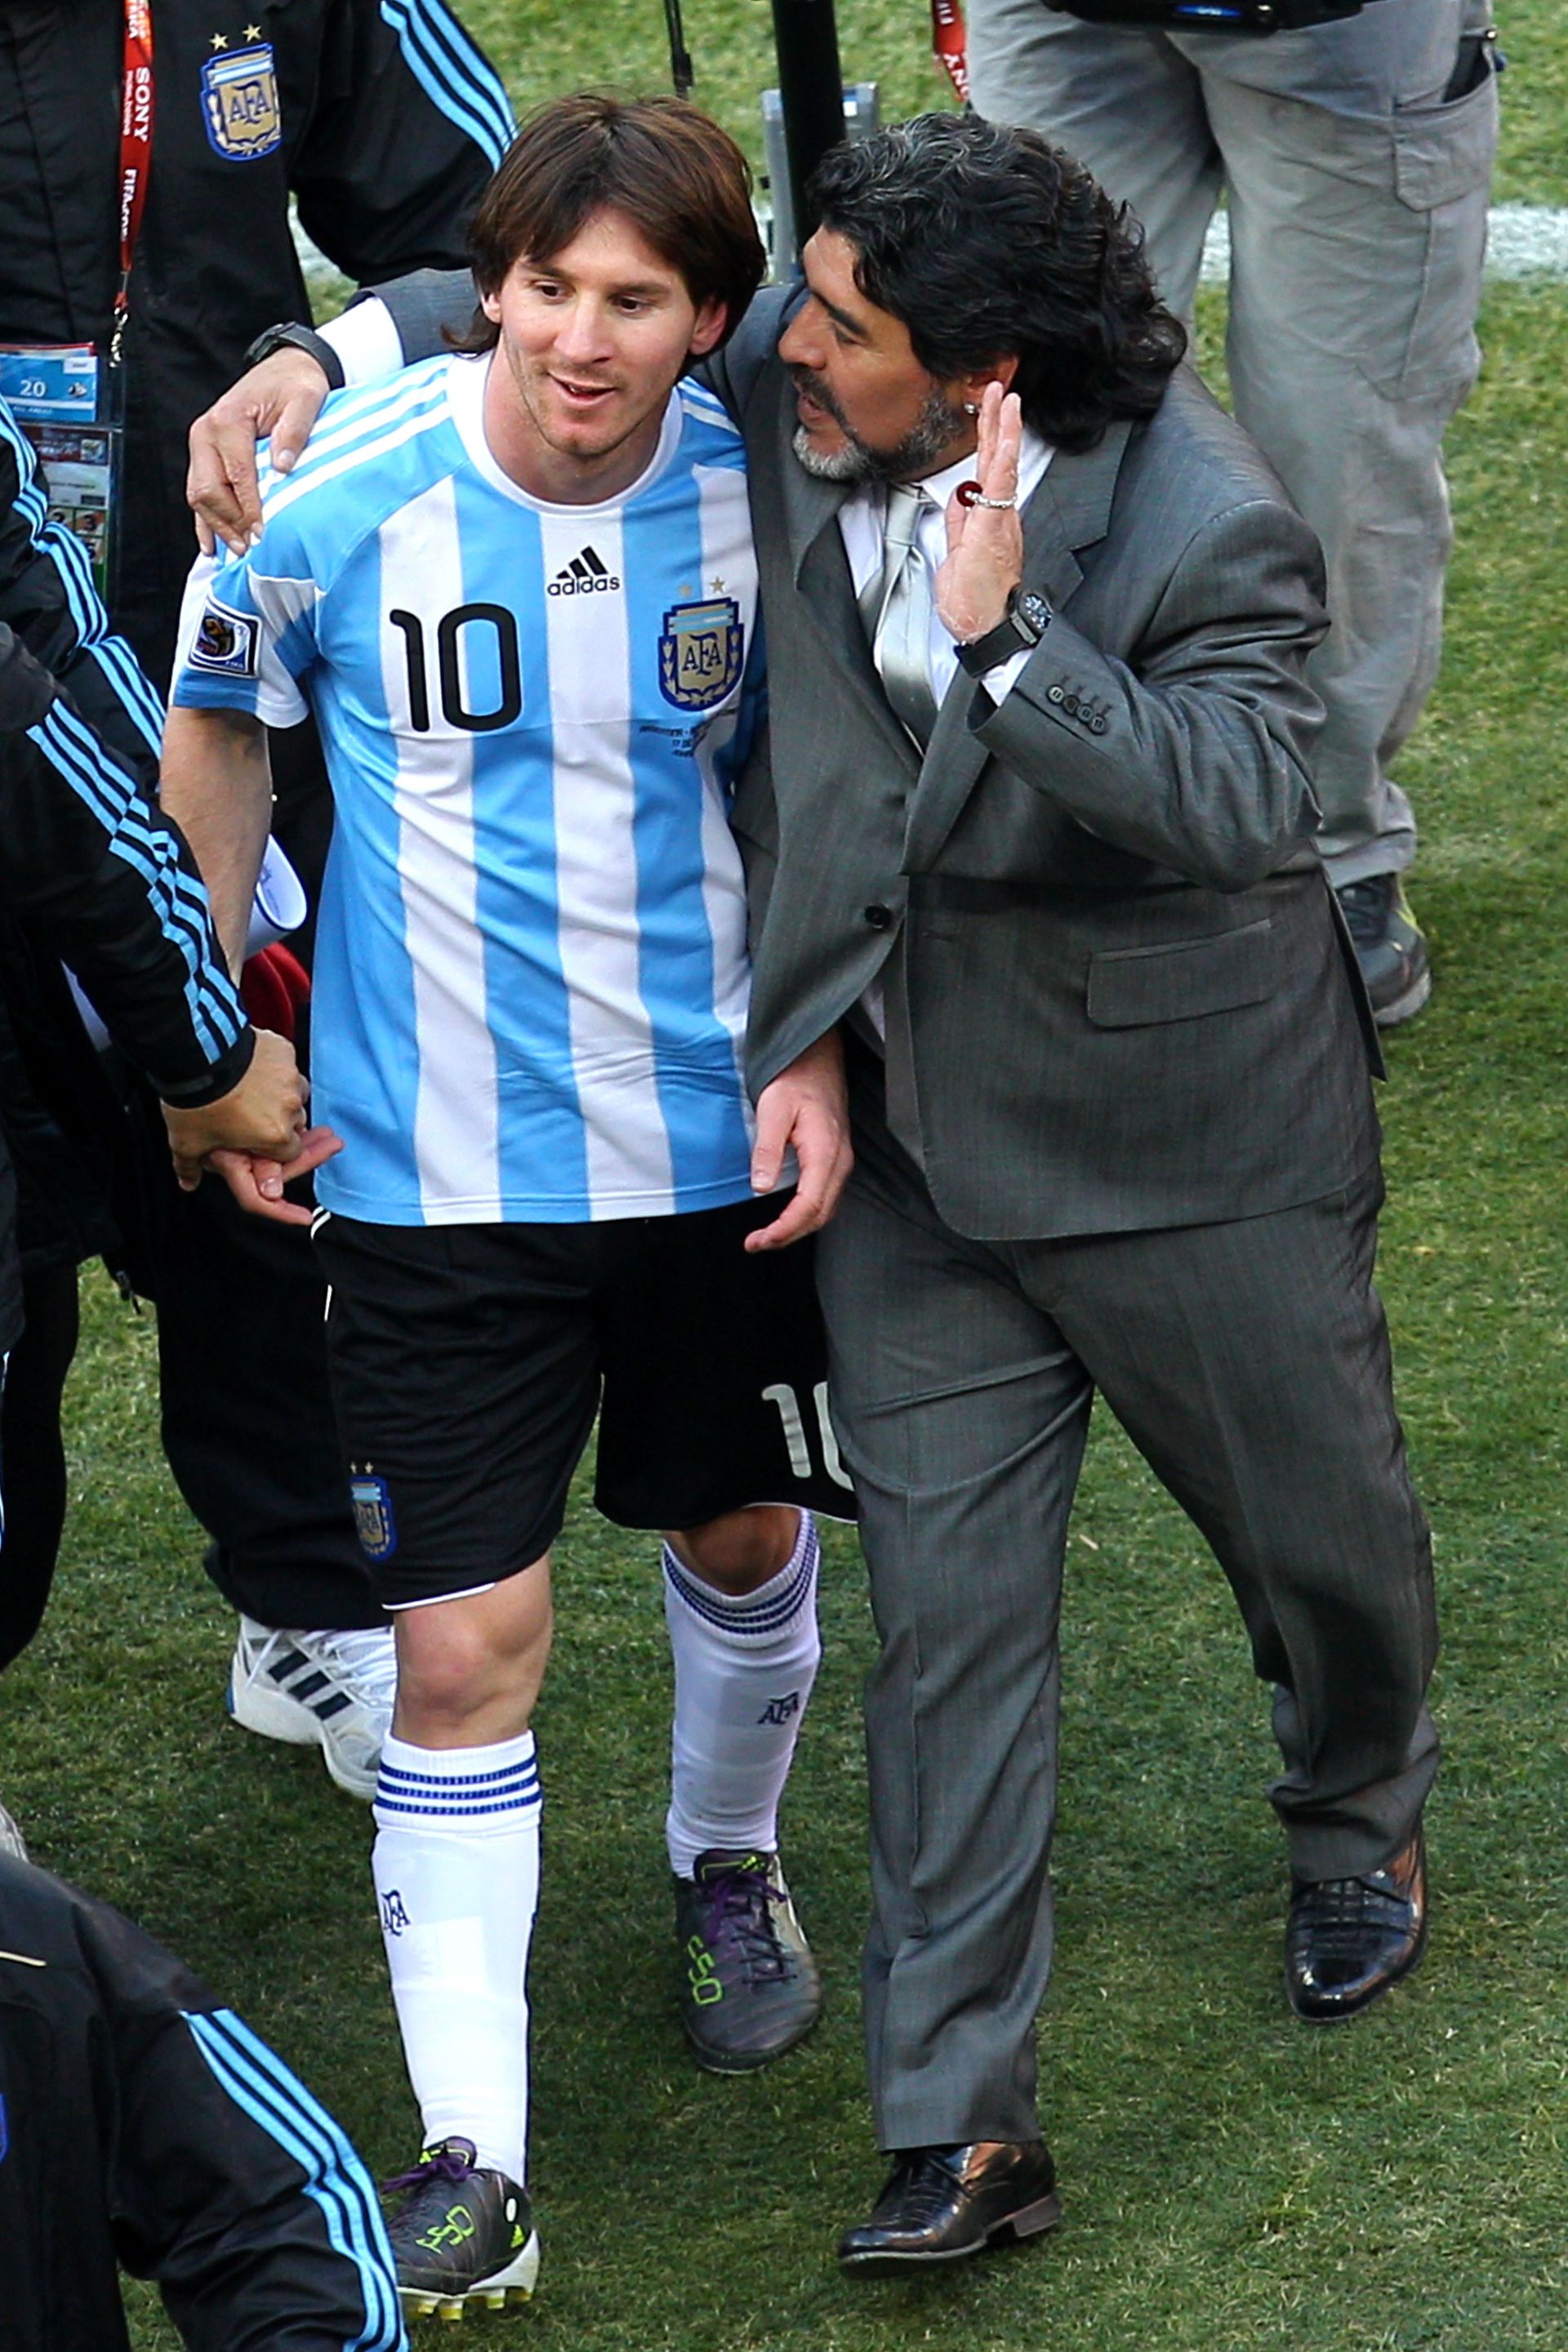 Argentína két legnagyobb csillaga a 2010-es világbajnokságon egyaránt leszerepelt. Fotó: Getty